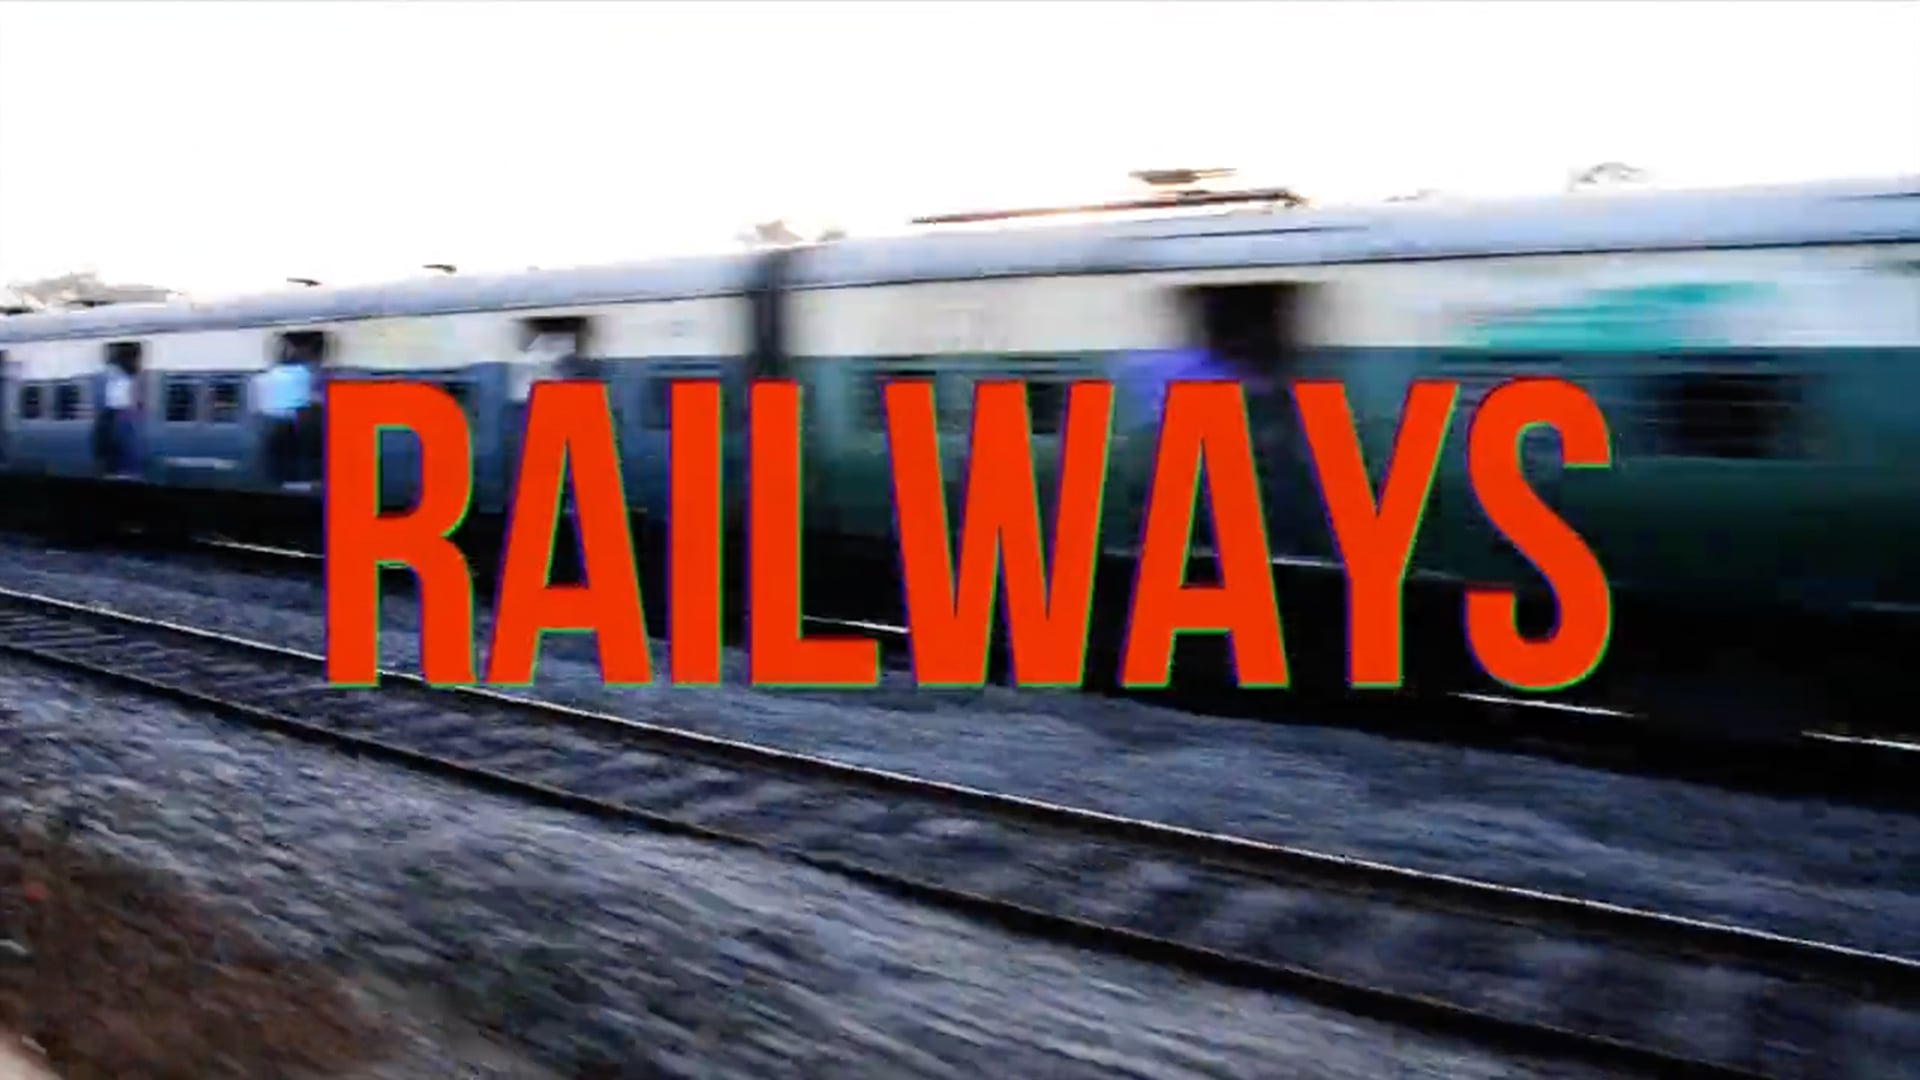 Railways by Sadubas